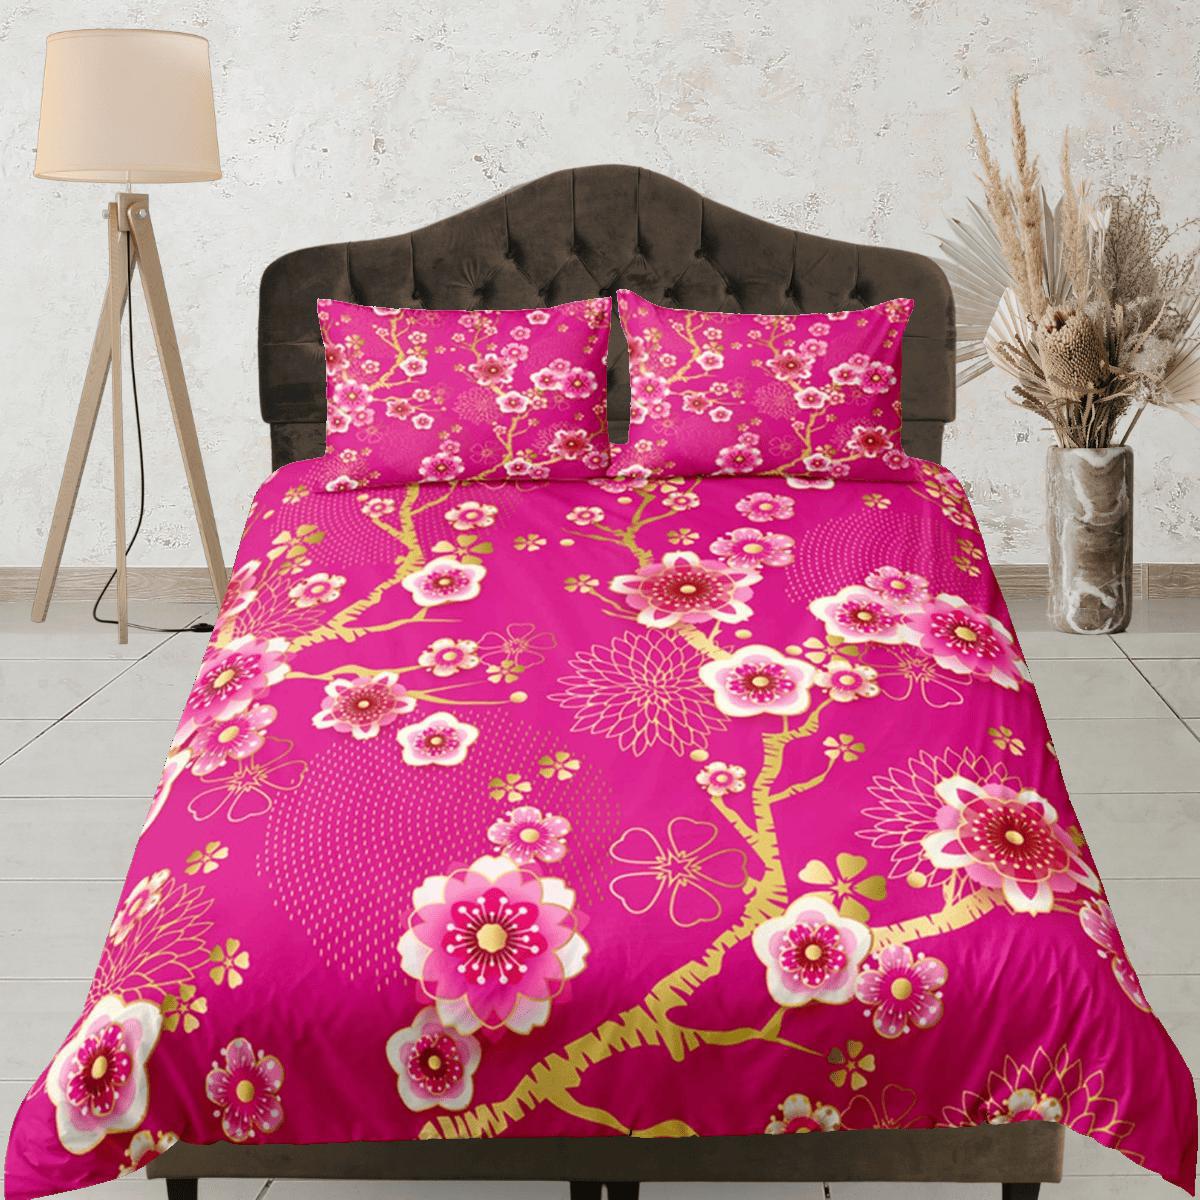 daintyduvet Cherry Blossom Pink Duvet Cover Set, Floral Bedspread Dorm Bedding Set